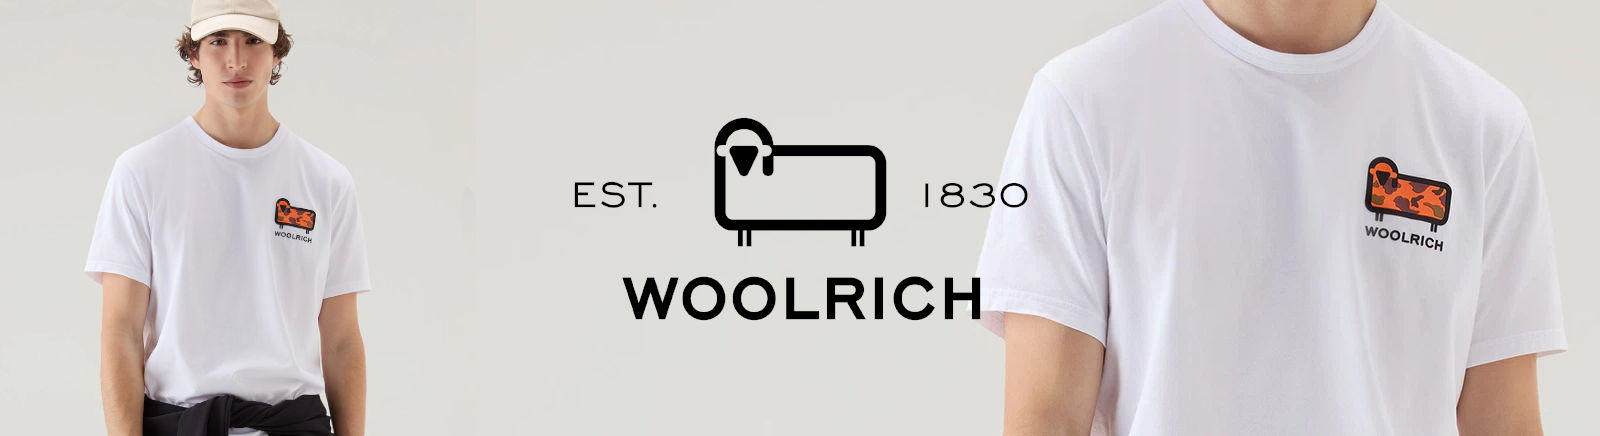 Prange: Woolrich Winterschuhe für Damen online shoppen